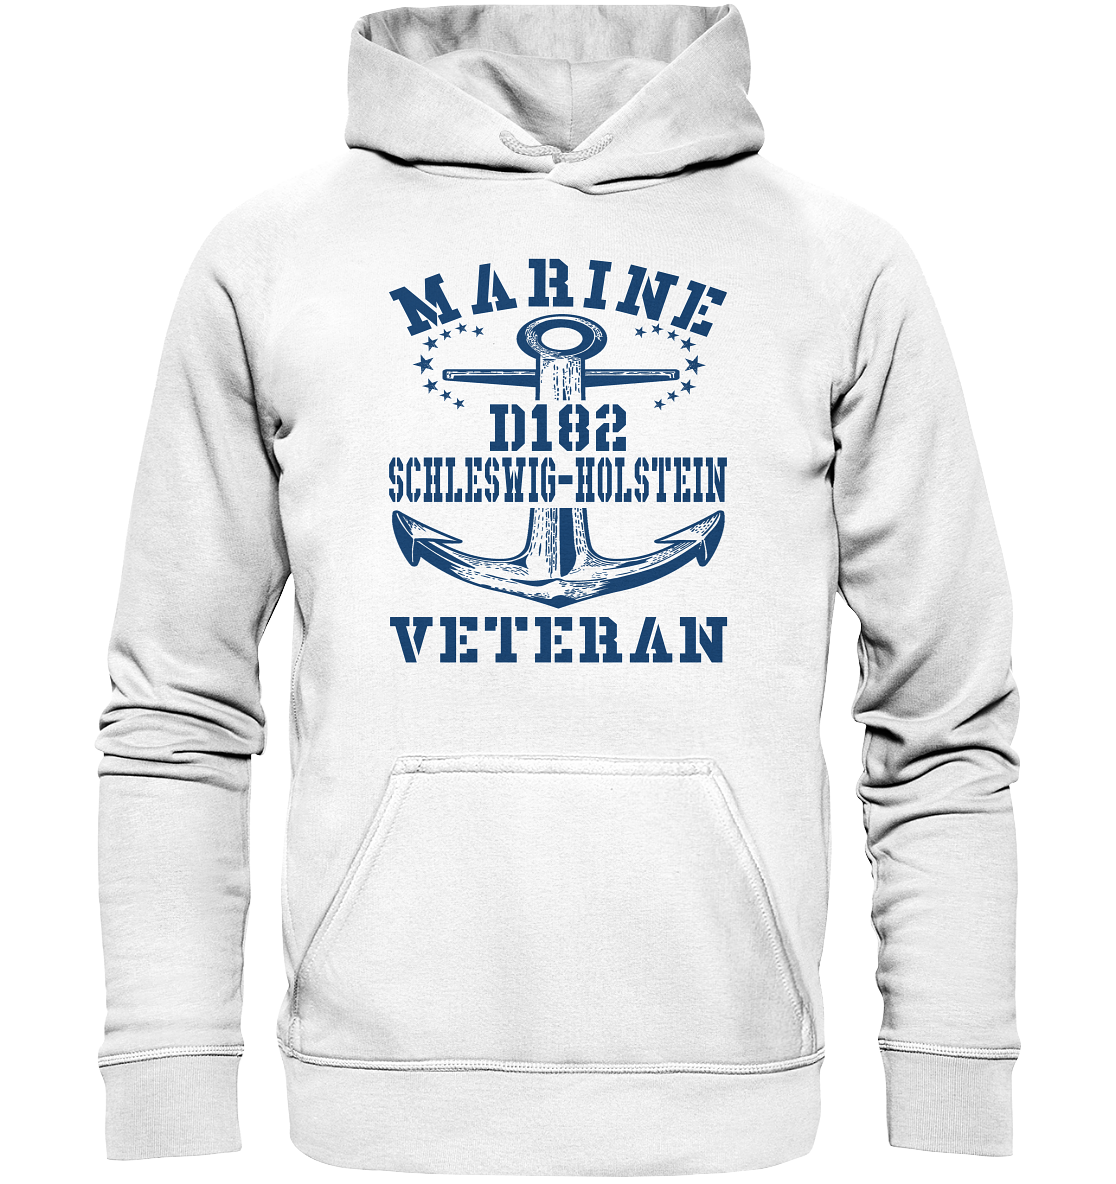 Zerstörer D182 SCHLESWIG-HOLSTEIN Marine Veteran  - Basic Unisex Hoodie